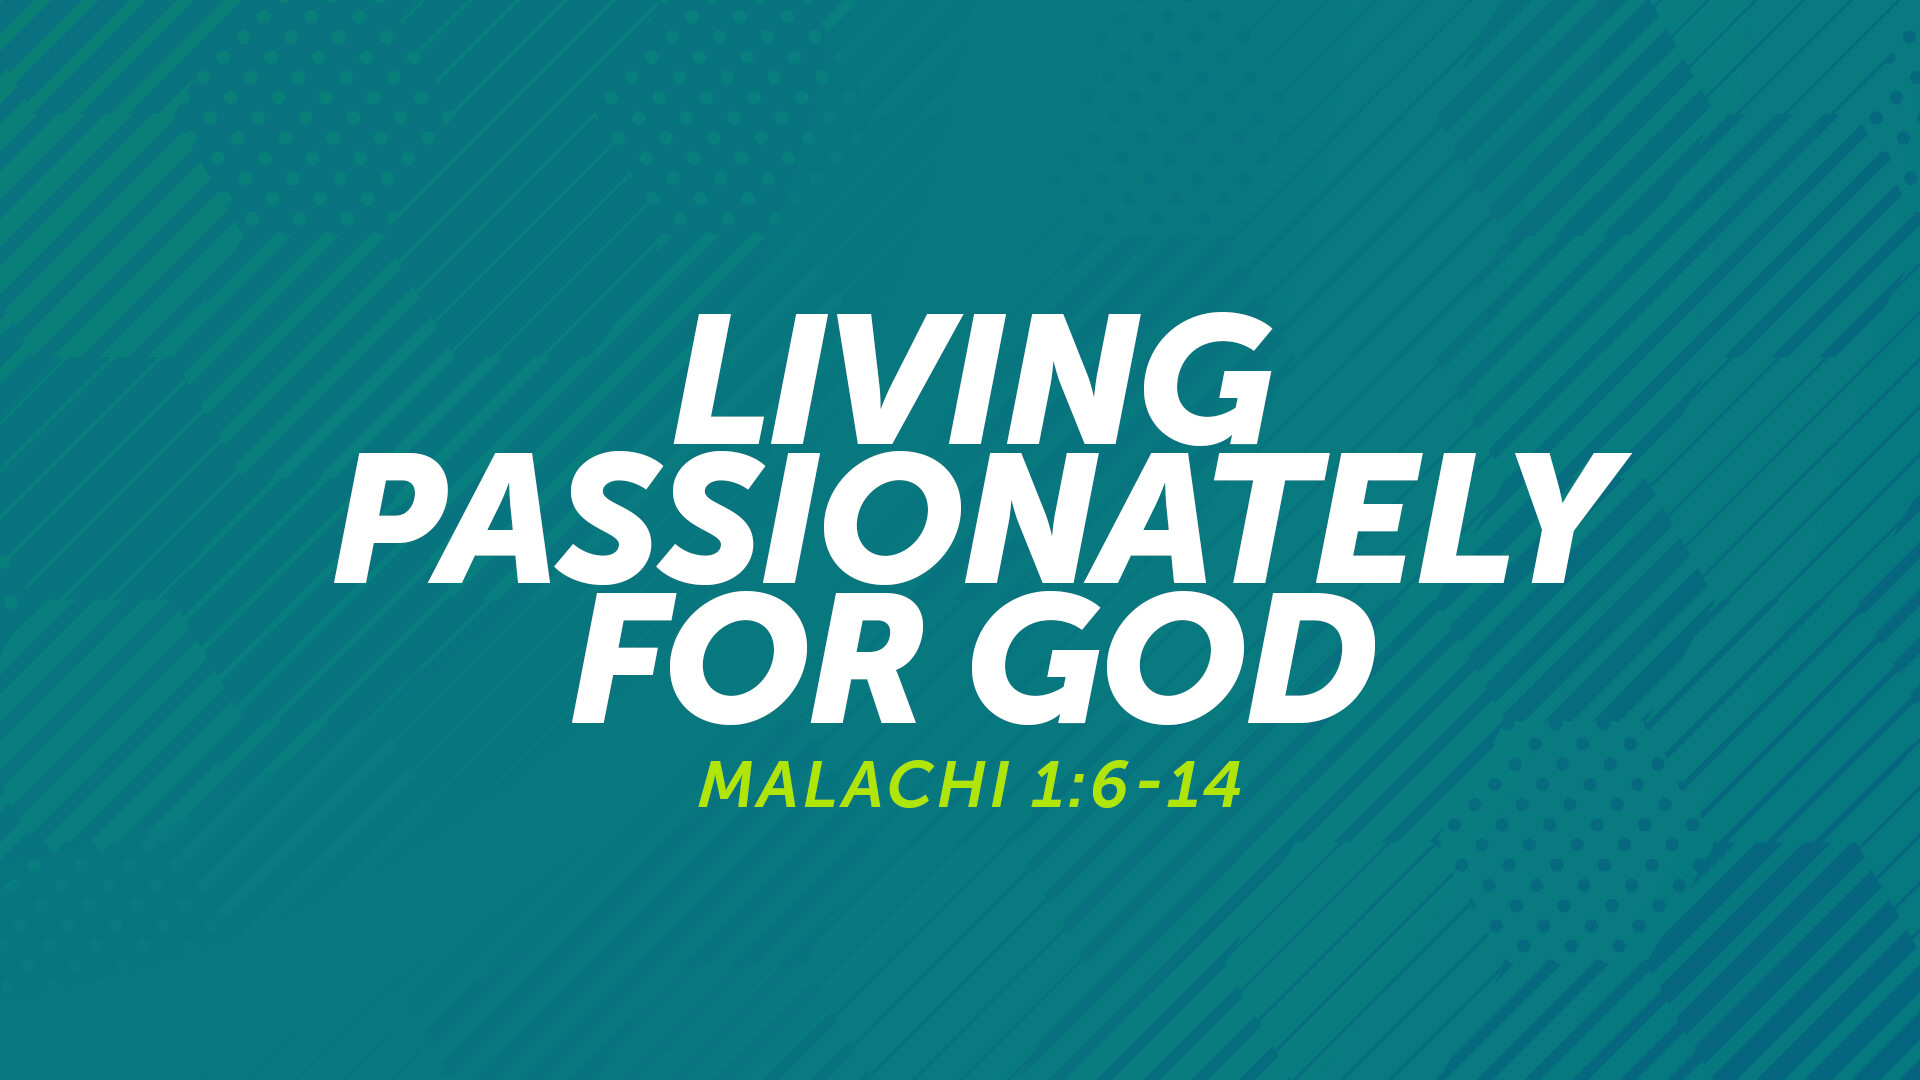 Living Passionately for God